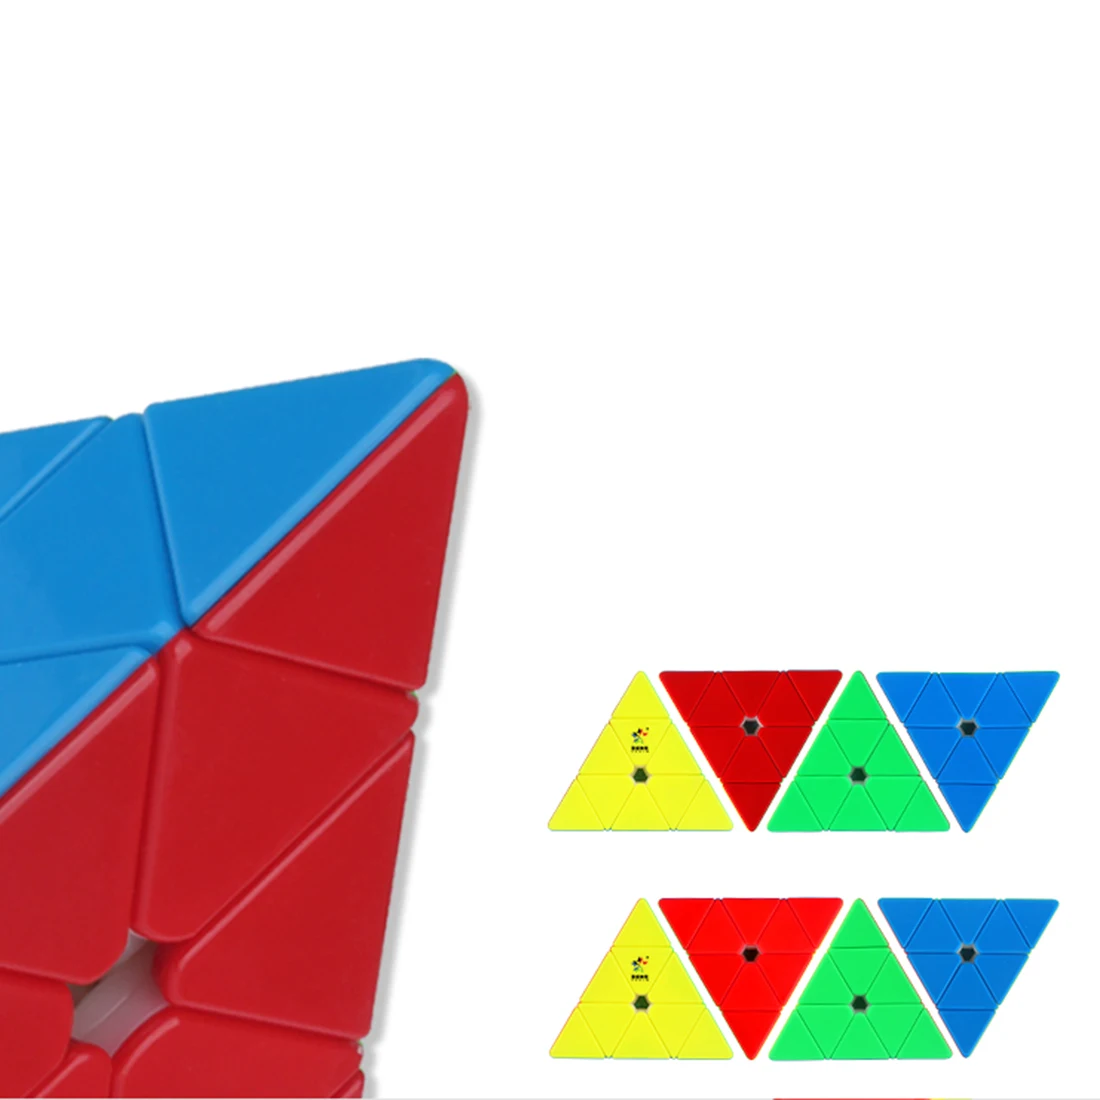 Магнитный пирамидный магический куб YuXin Huanglong игрушка-пазл для обучения мозгу